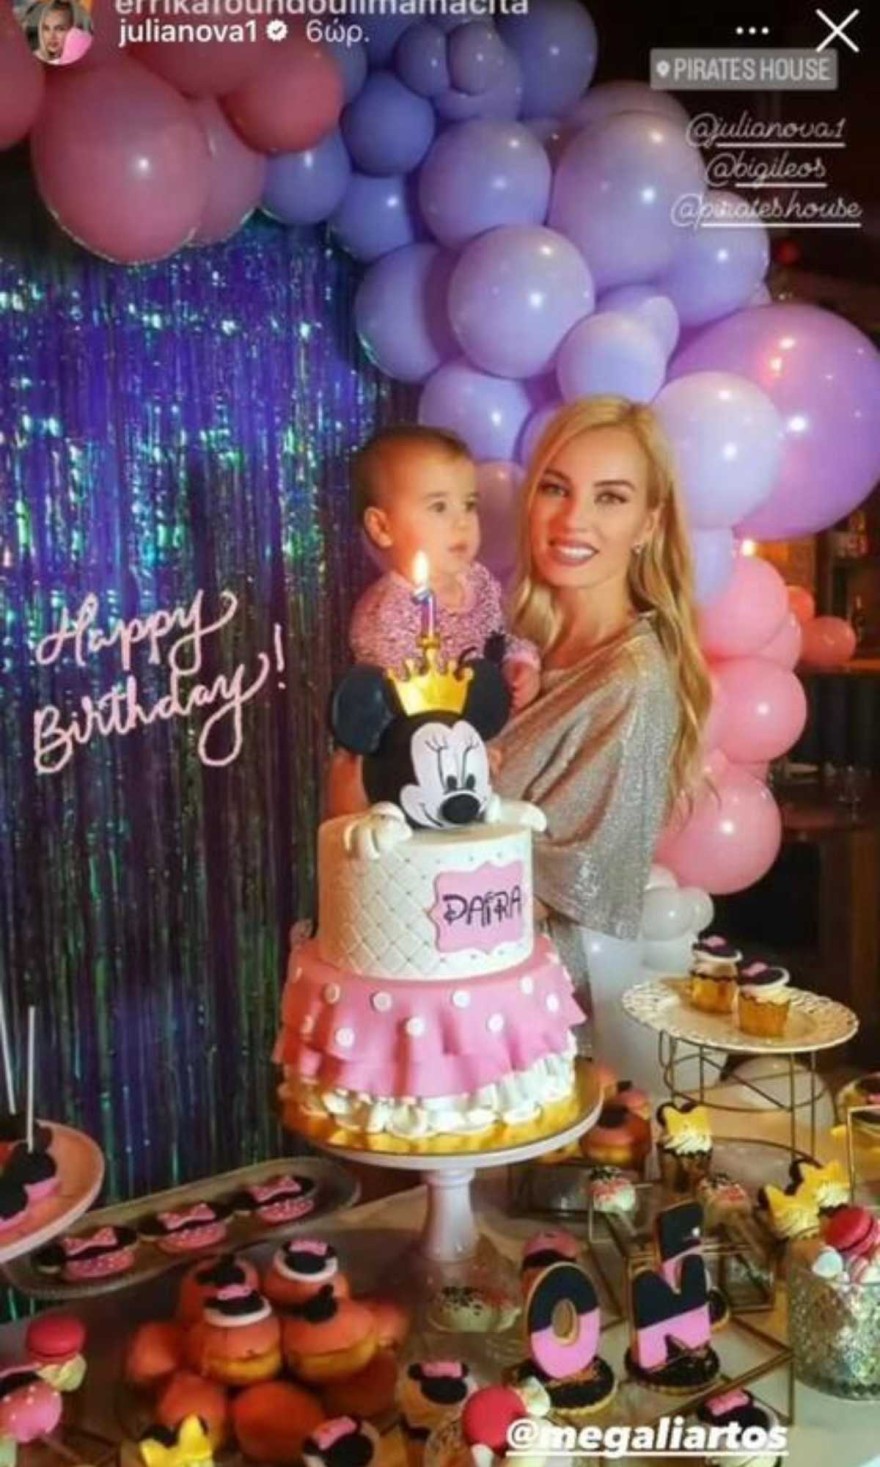 Στιγμιότυπα από το πάρτι γενεθλίων της κόρης της Τζούλιας Νόβα και του Μιχάλη Βιτζηλαίου